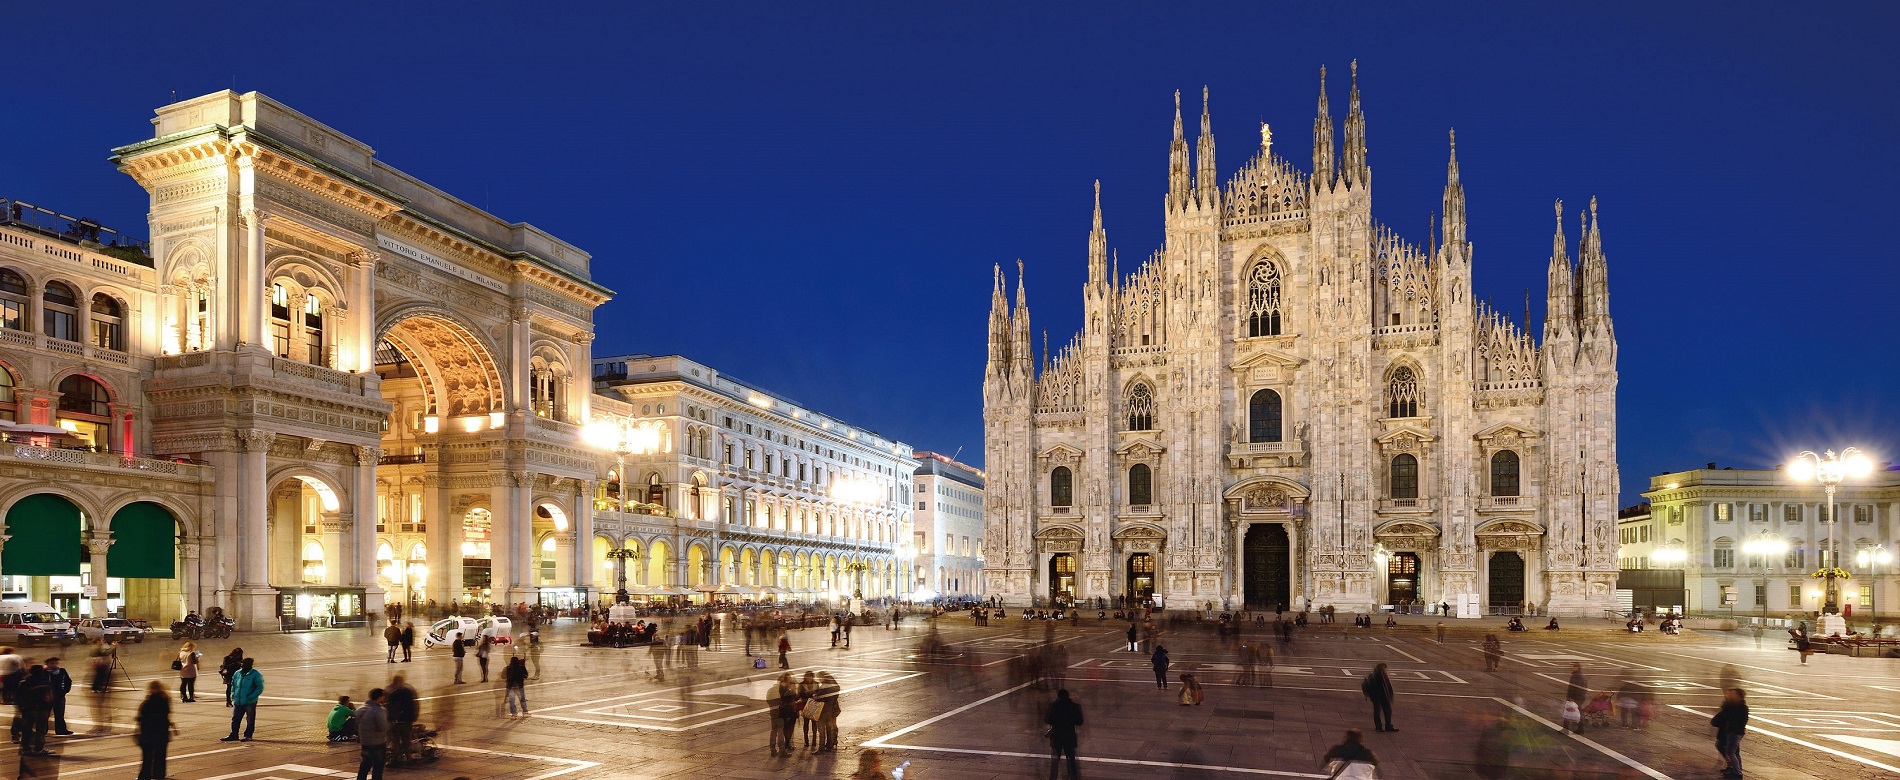 La Piazza del Duomo donde se aprecia la Catedral en Milán.